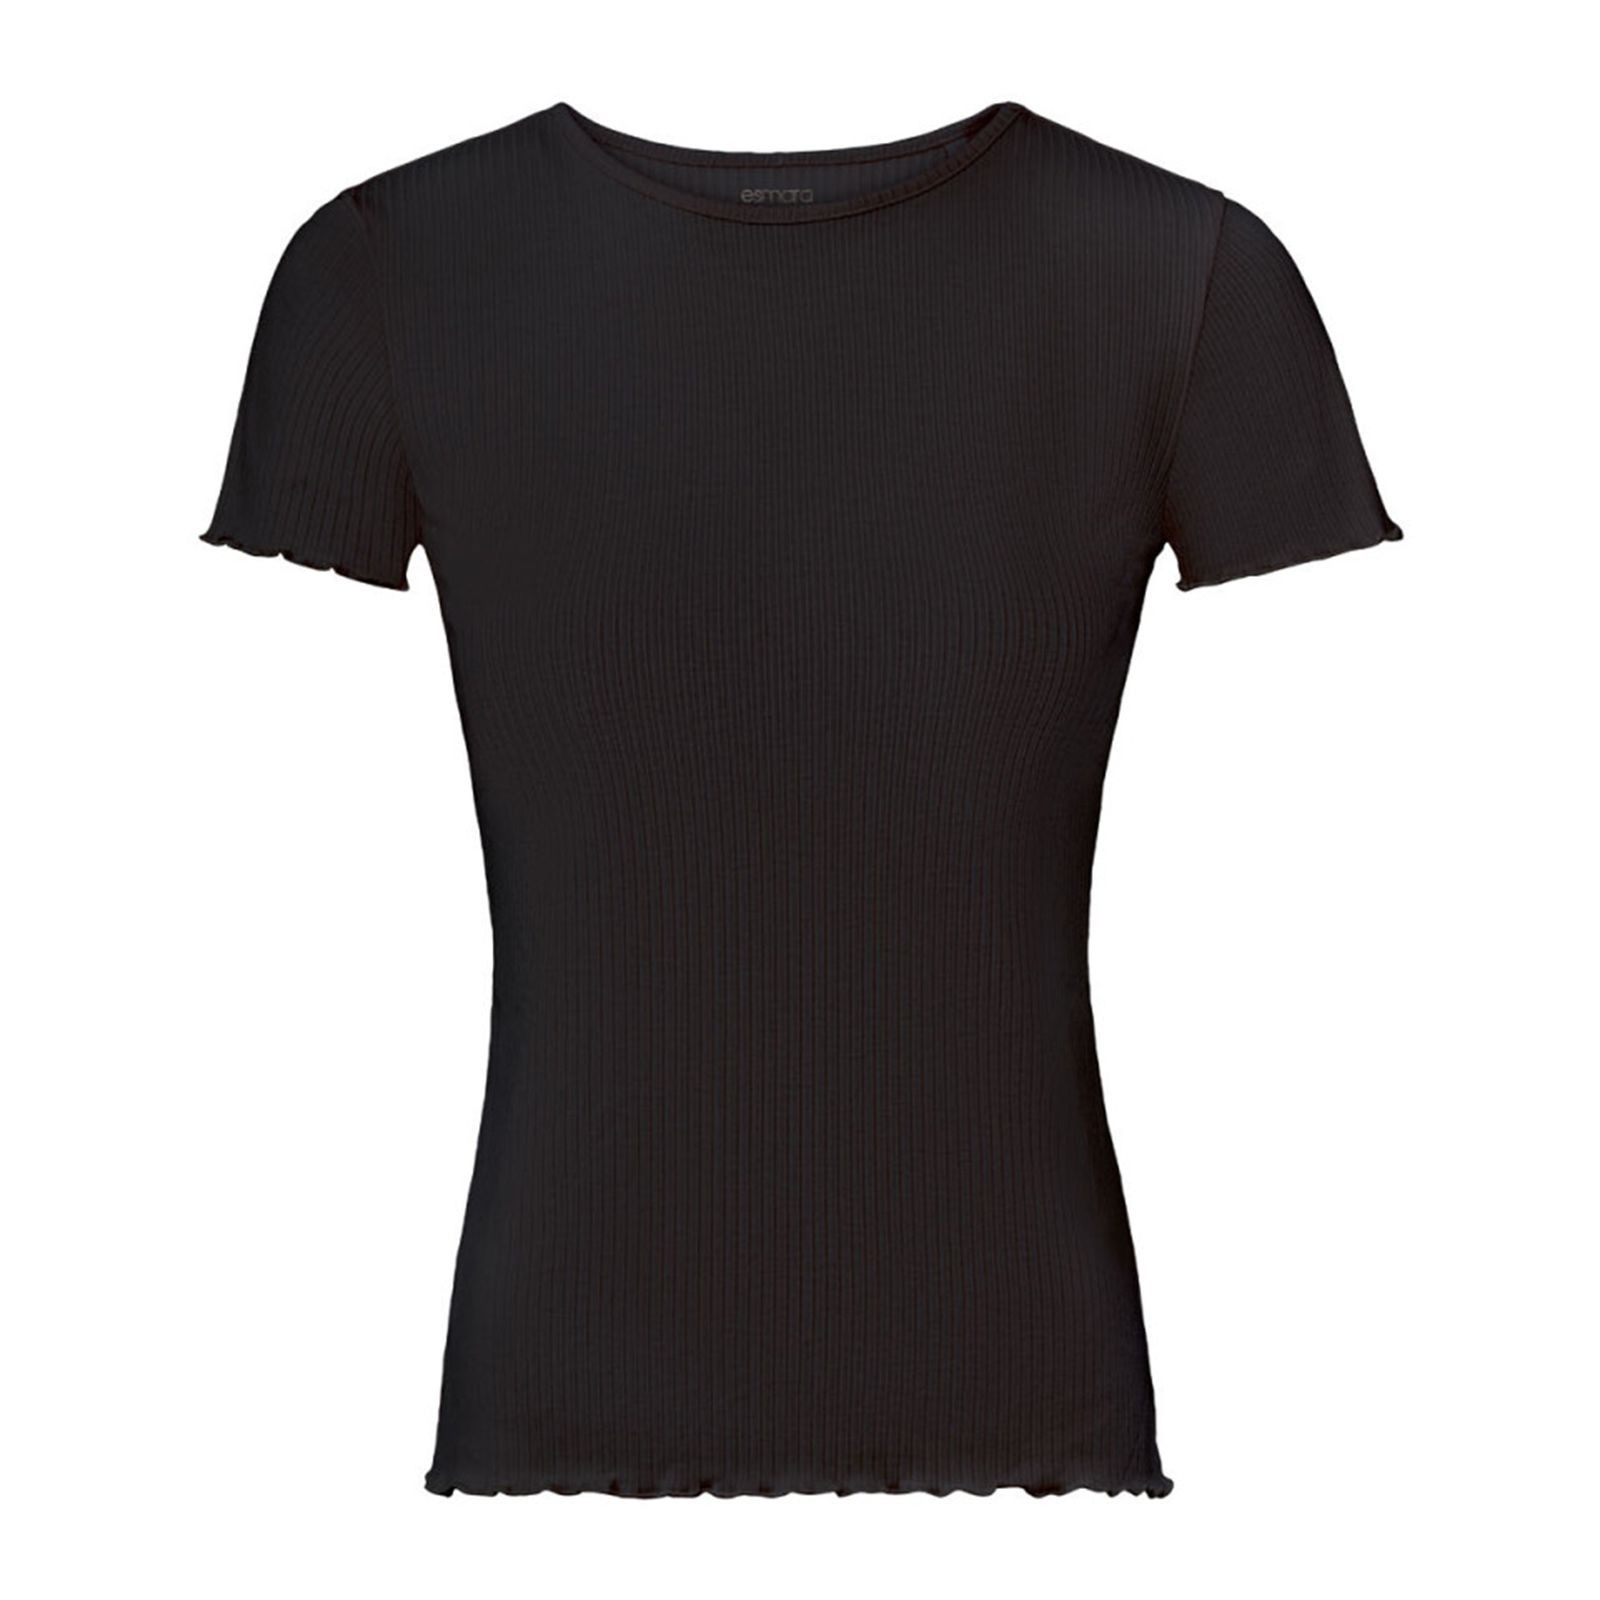 تی شرت آستین کوتاه زنانه اسمارا مدل کبریتی رنگ مشکی -  - 1